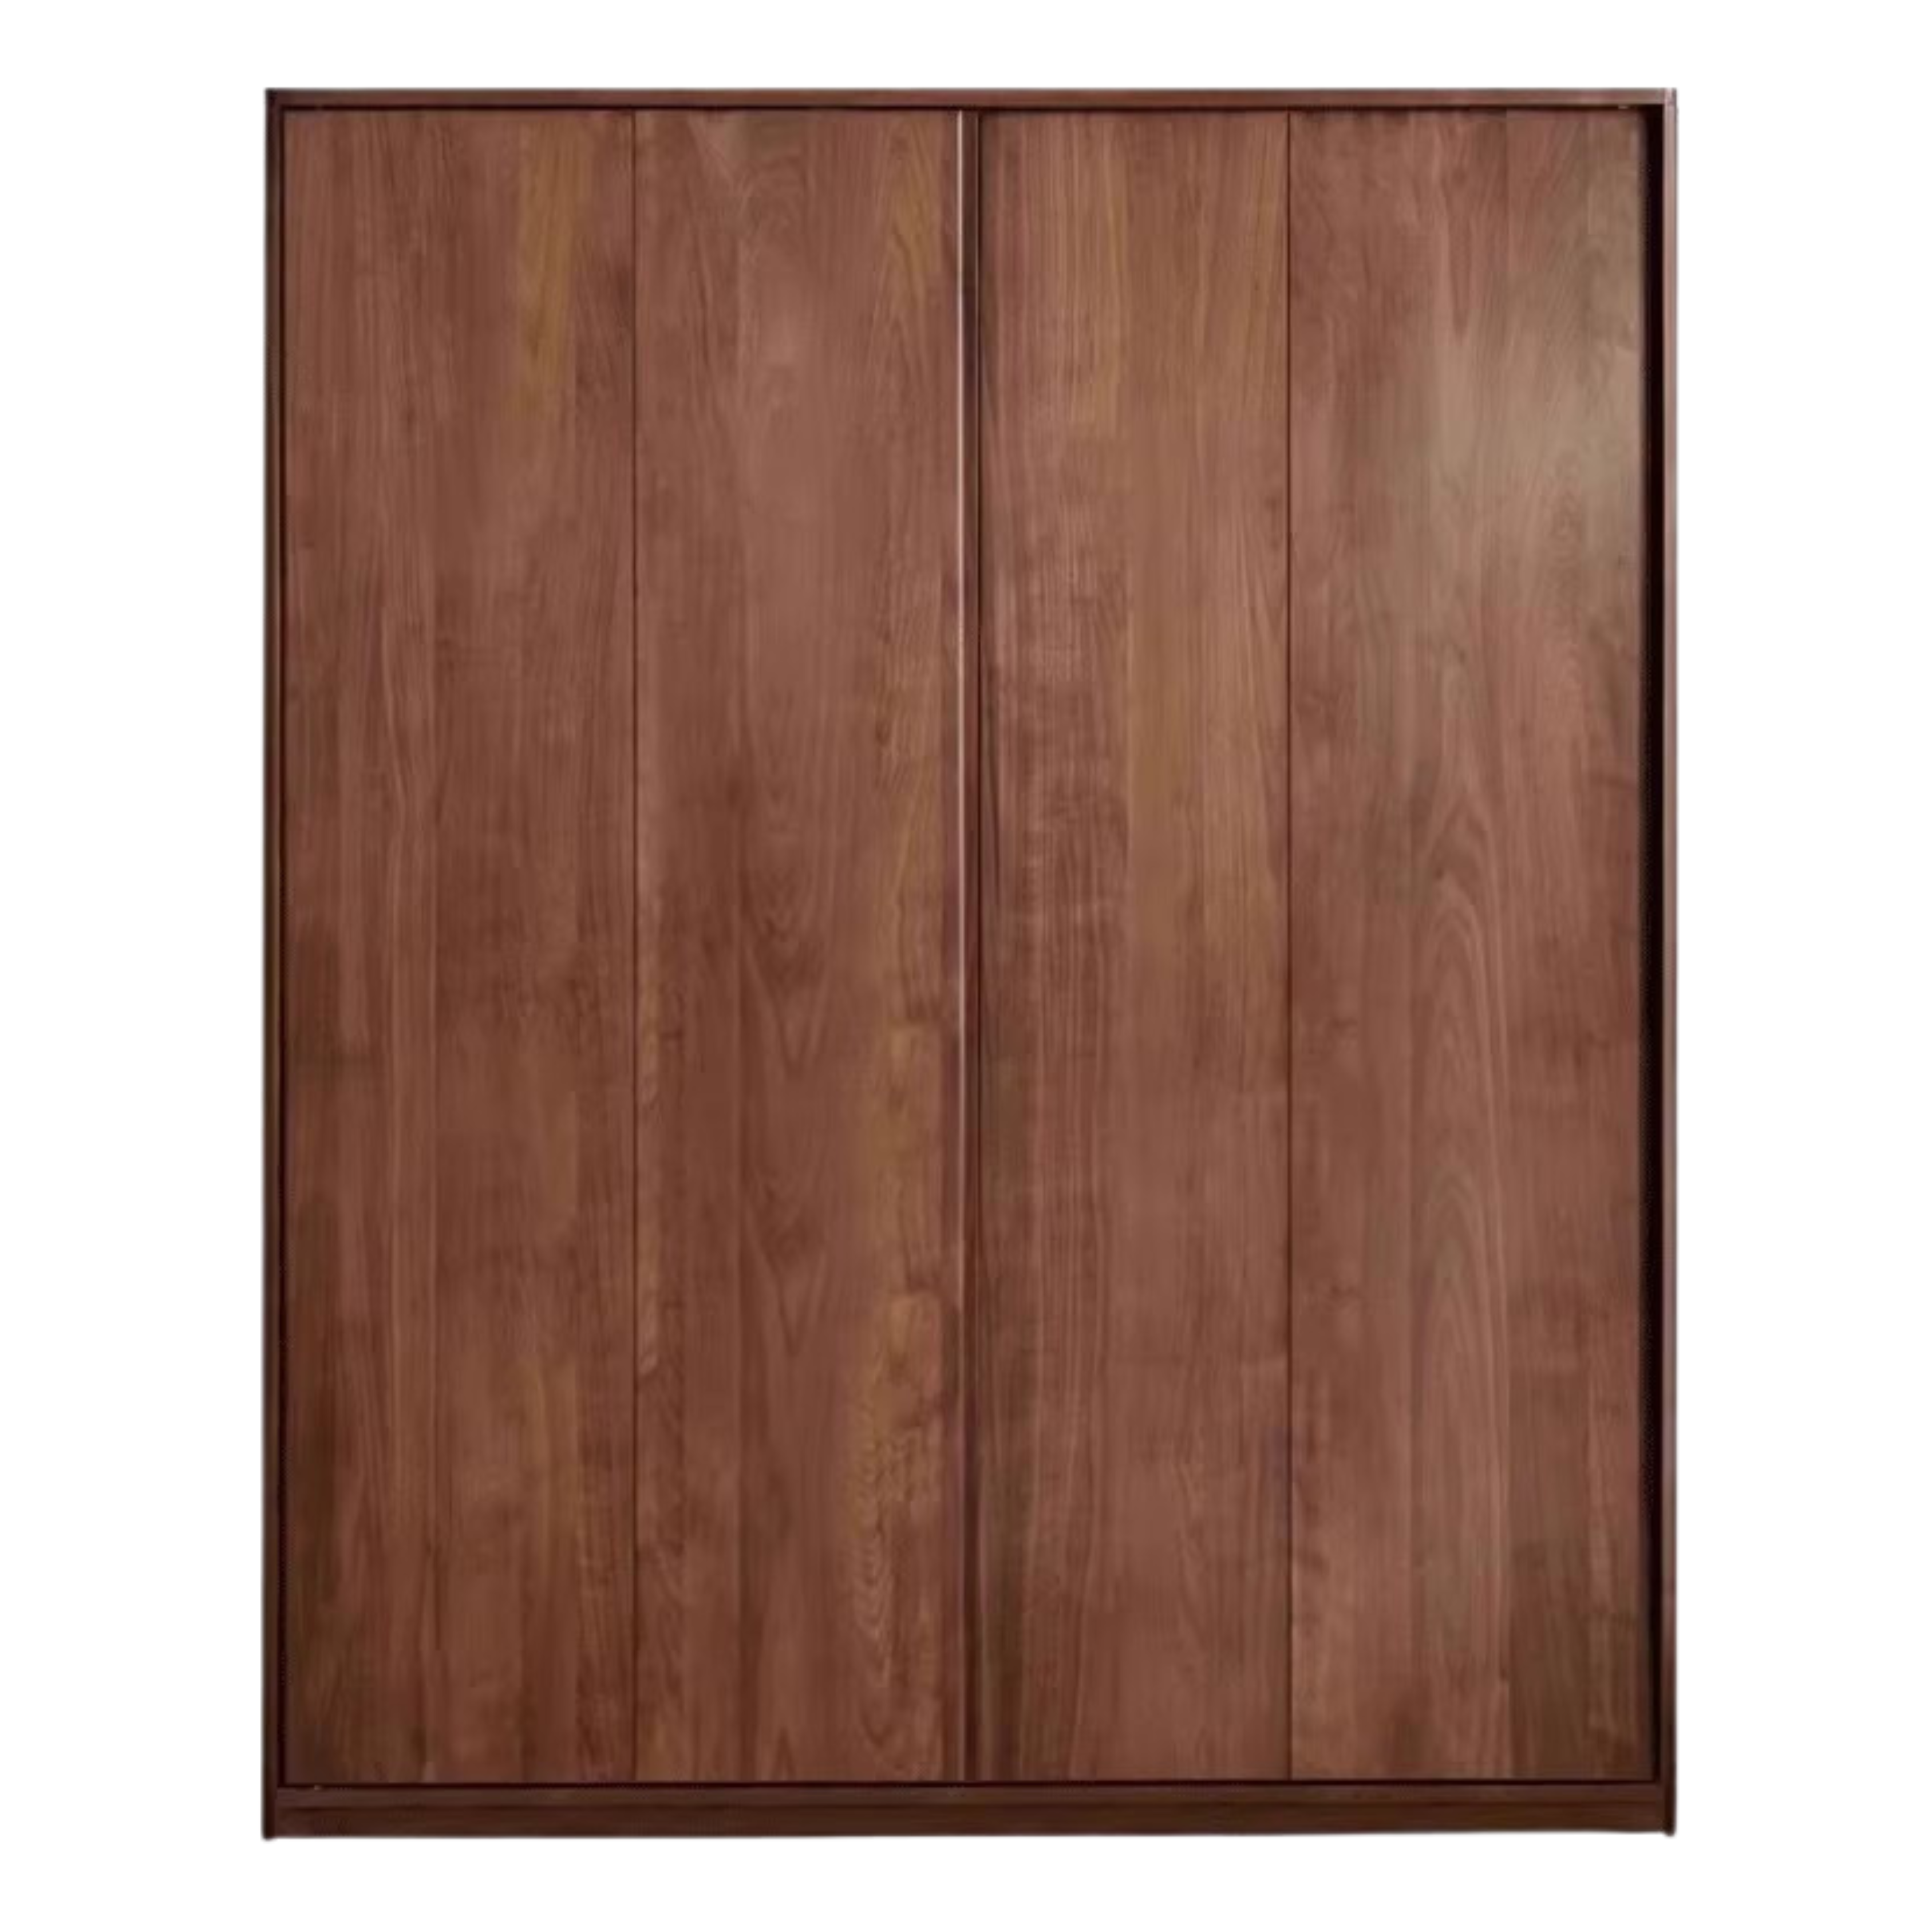 Black Walnut solid wood sliding door wardrobe